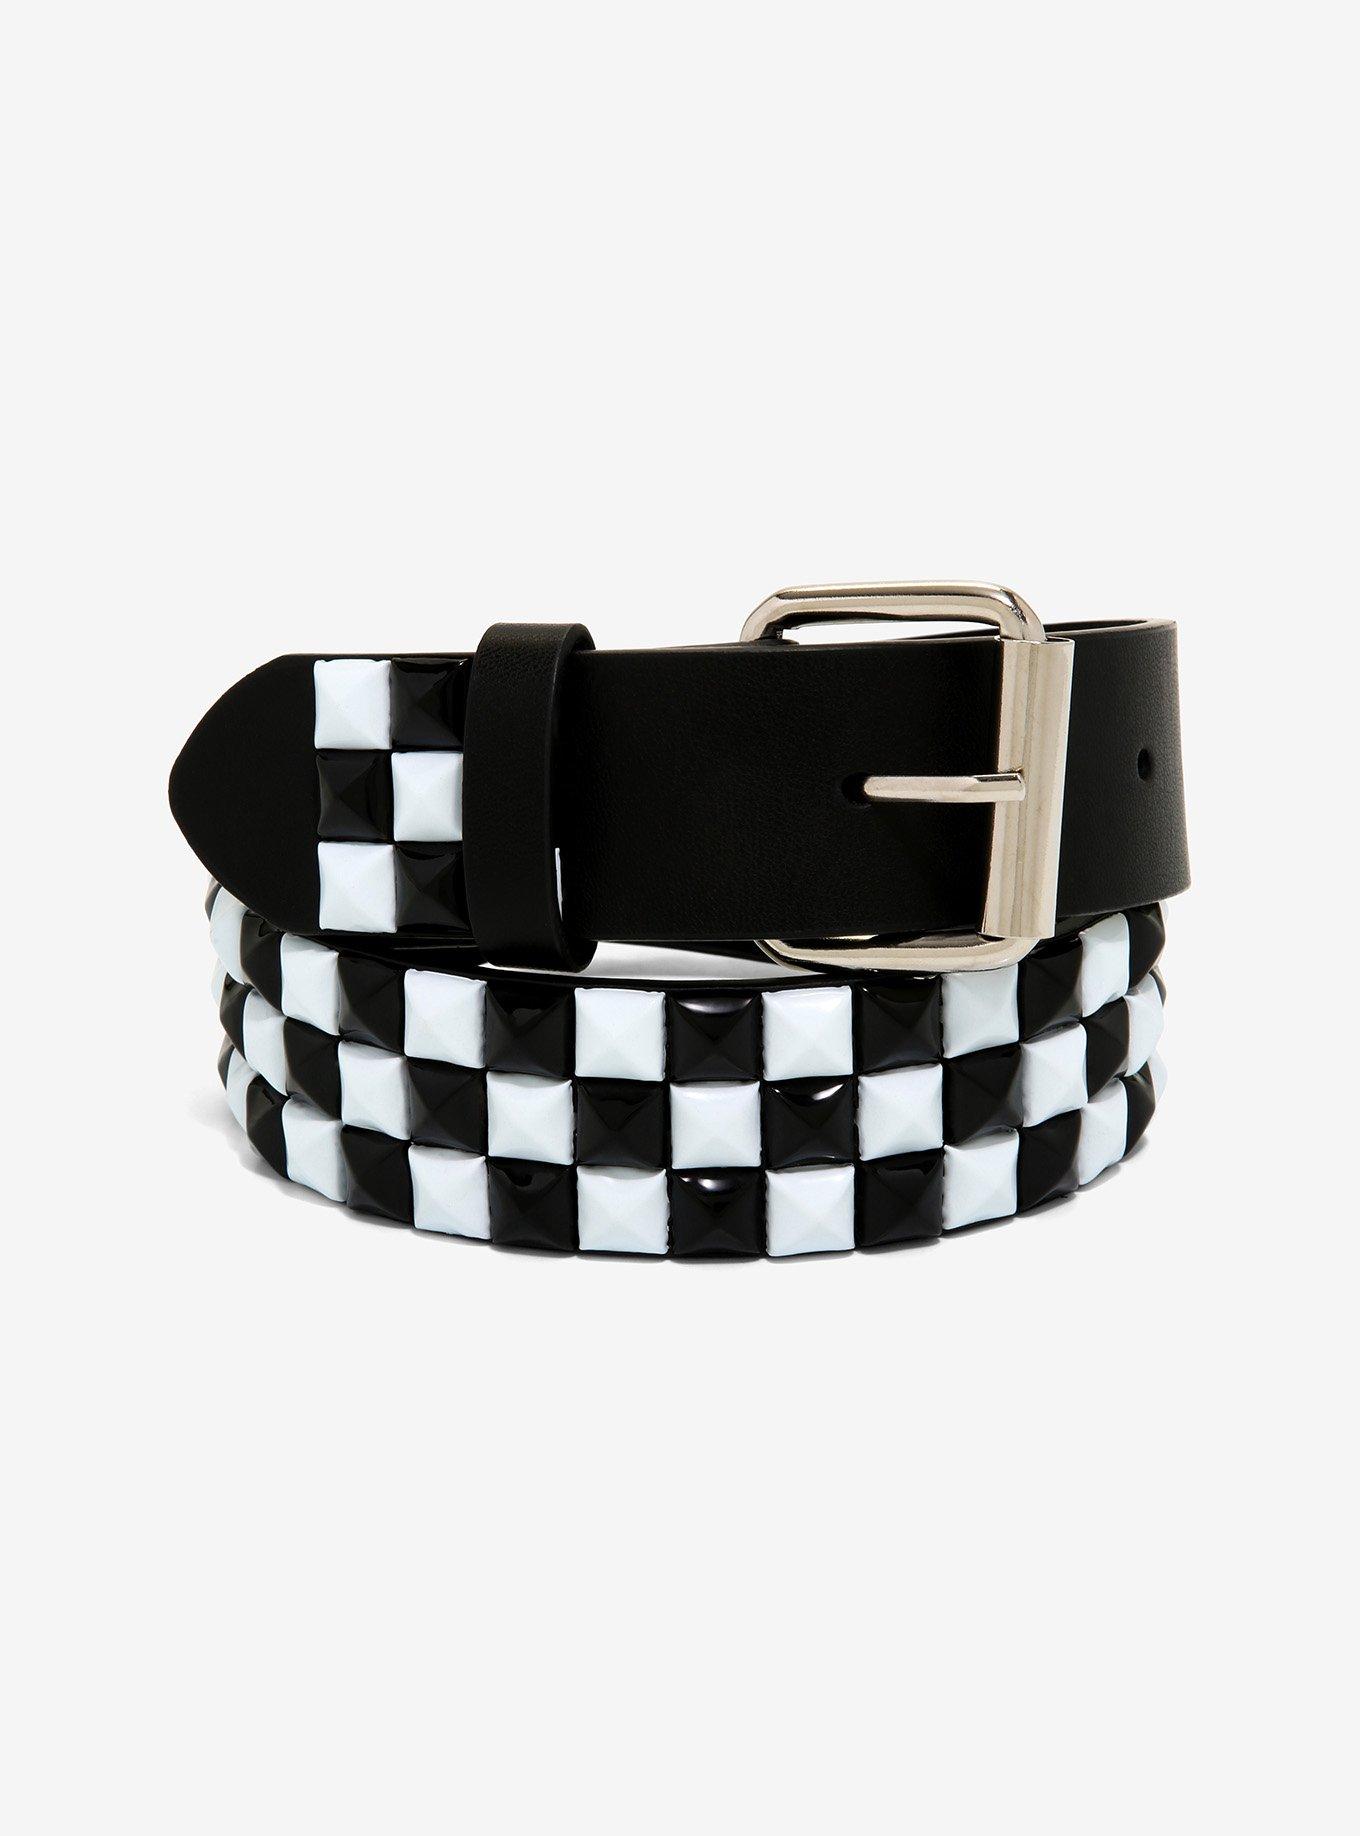 Black and White Checkered Belt - Spencer's